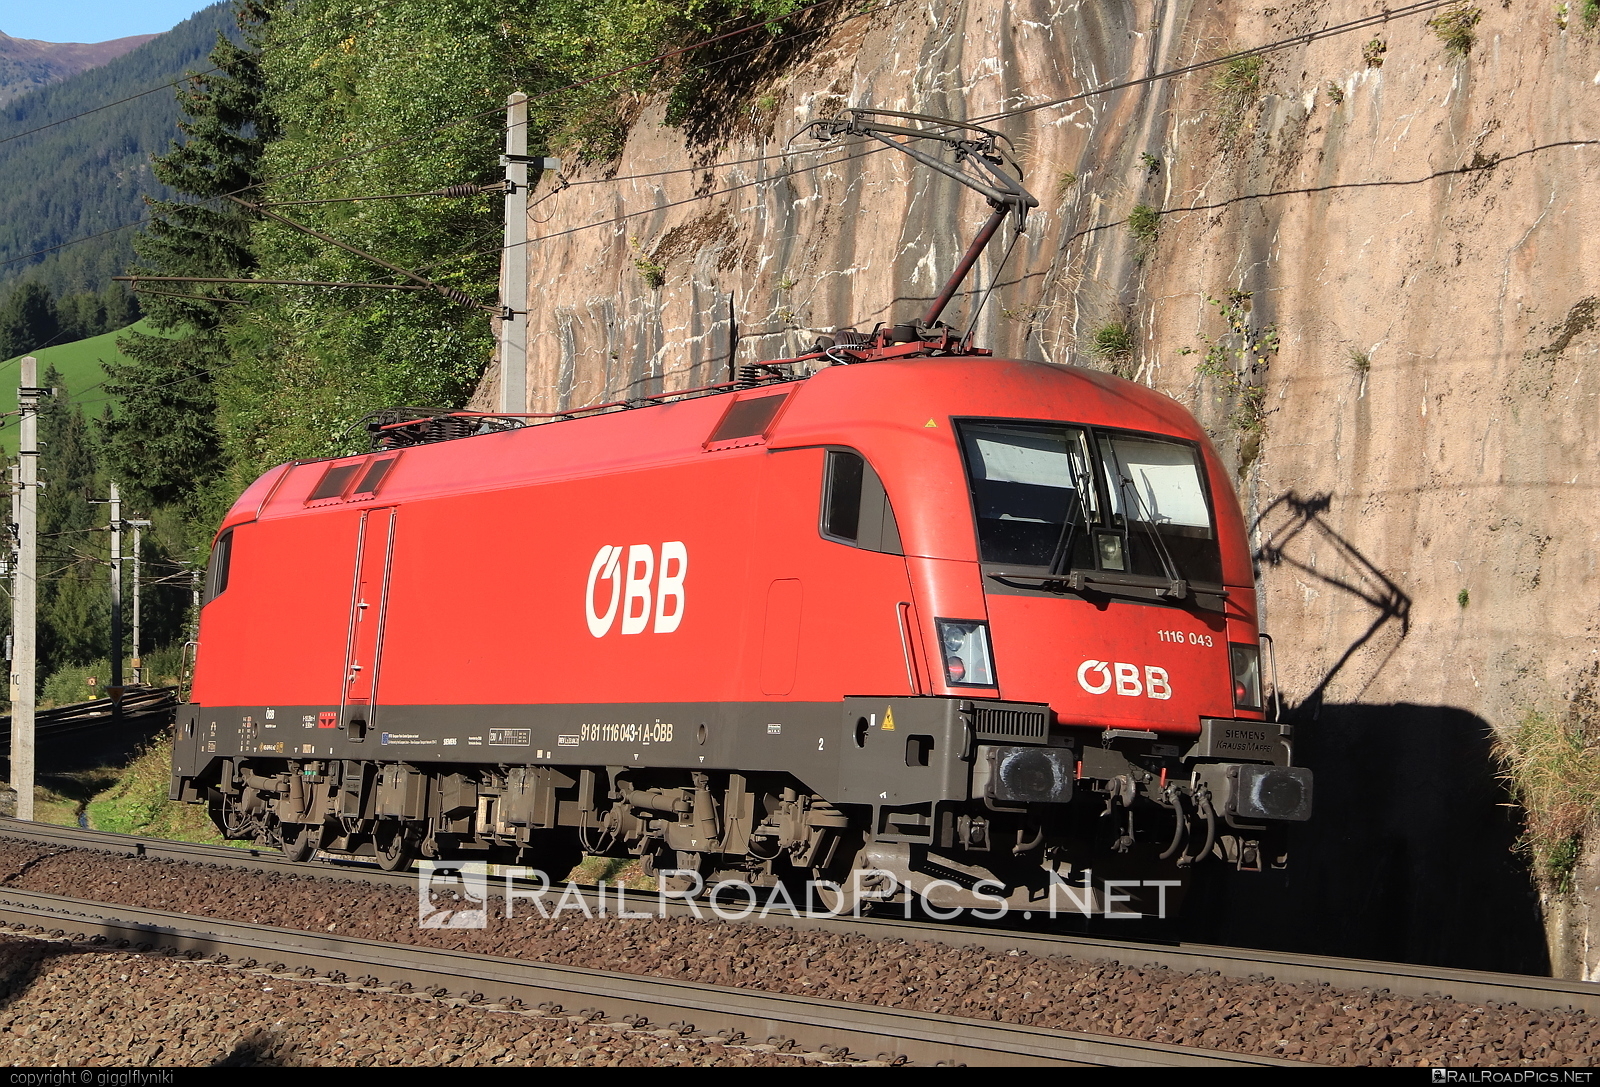 Siemens ES 64 U2 - 1116 043 operated by Österreichische Bundesbahnen #es64 #es64u2 #eurosprinter #obb #osterreichischebundesbahnen #siemens #siemensEs64 #siemensEs64u2 #siemenstaurus #taurus #tauruslocomotive